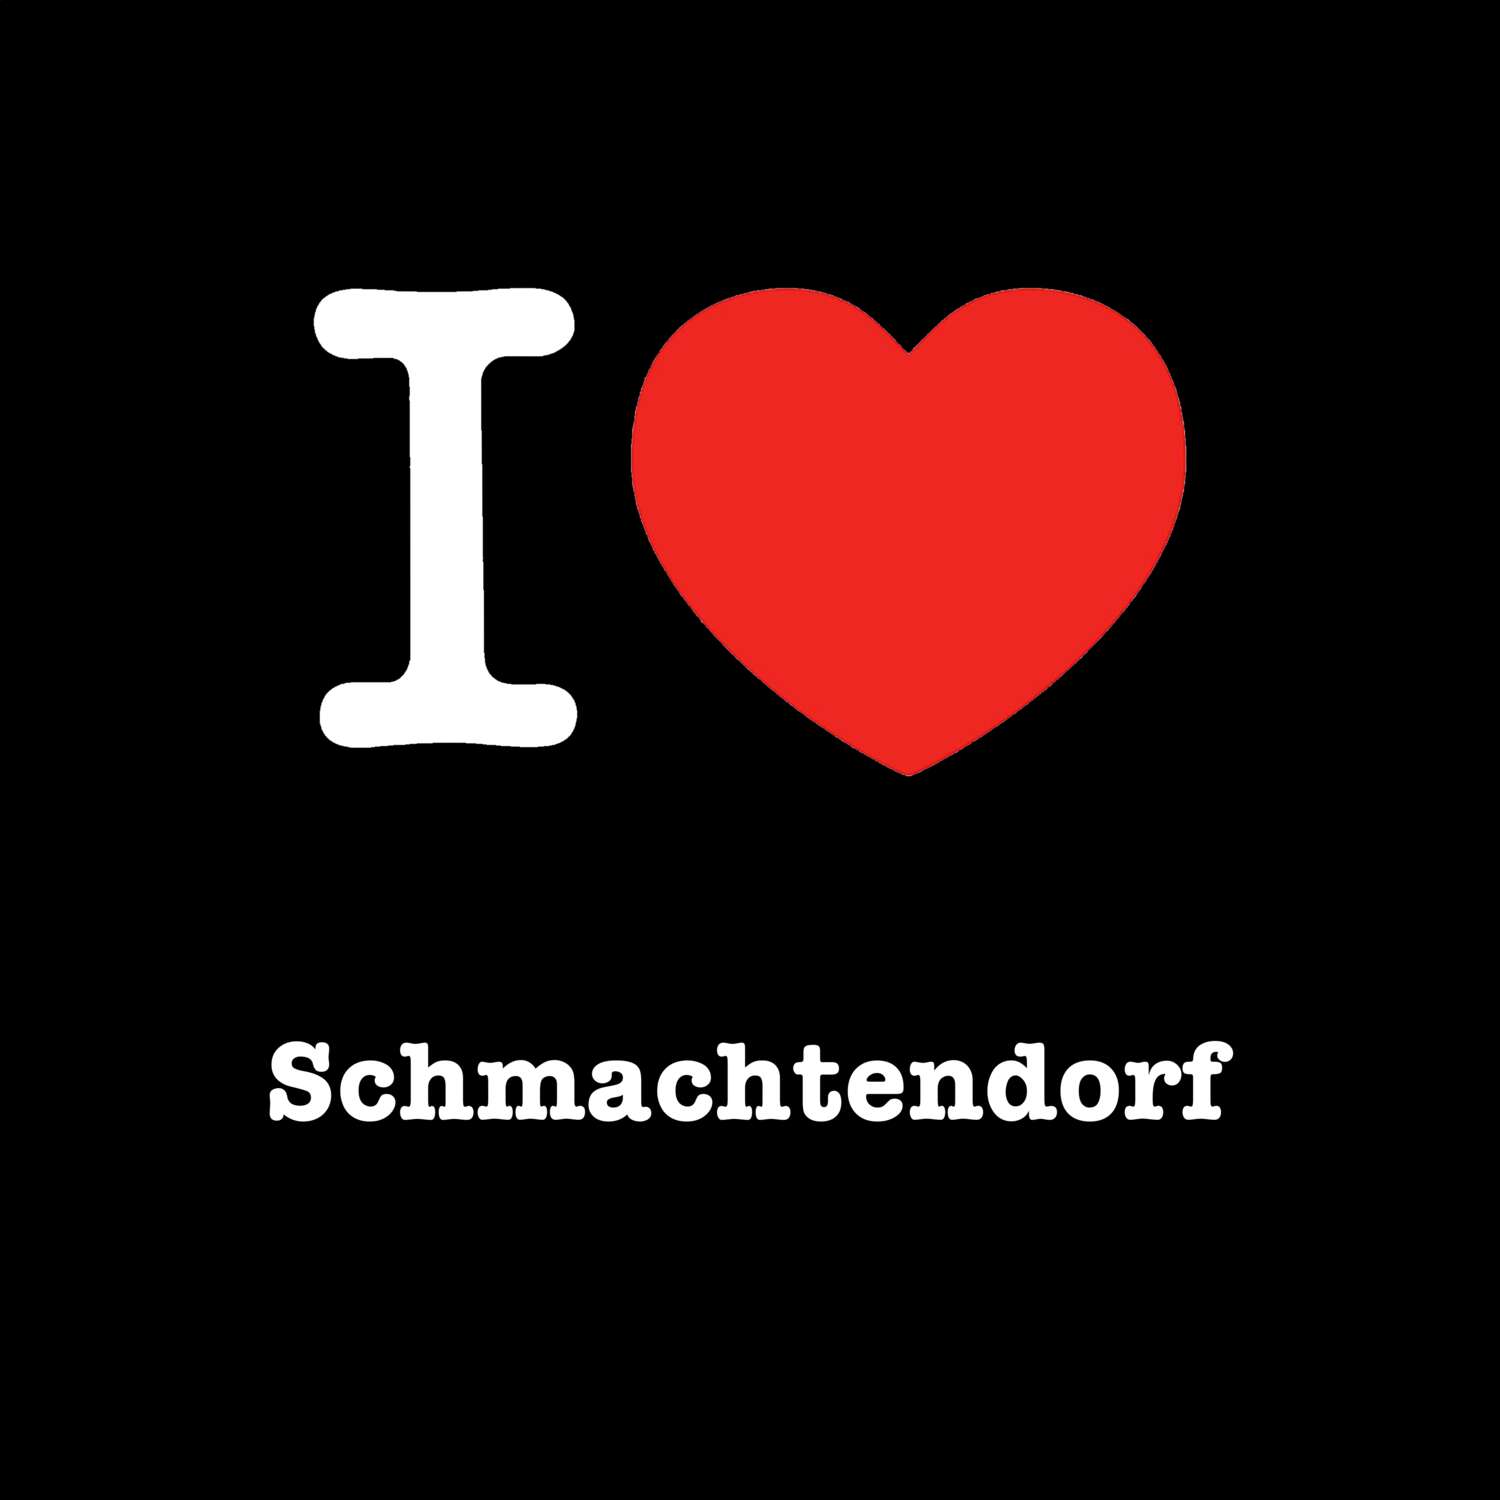 Schmachtendorf T-Shirt »I love«